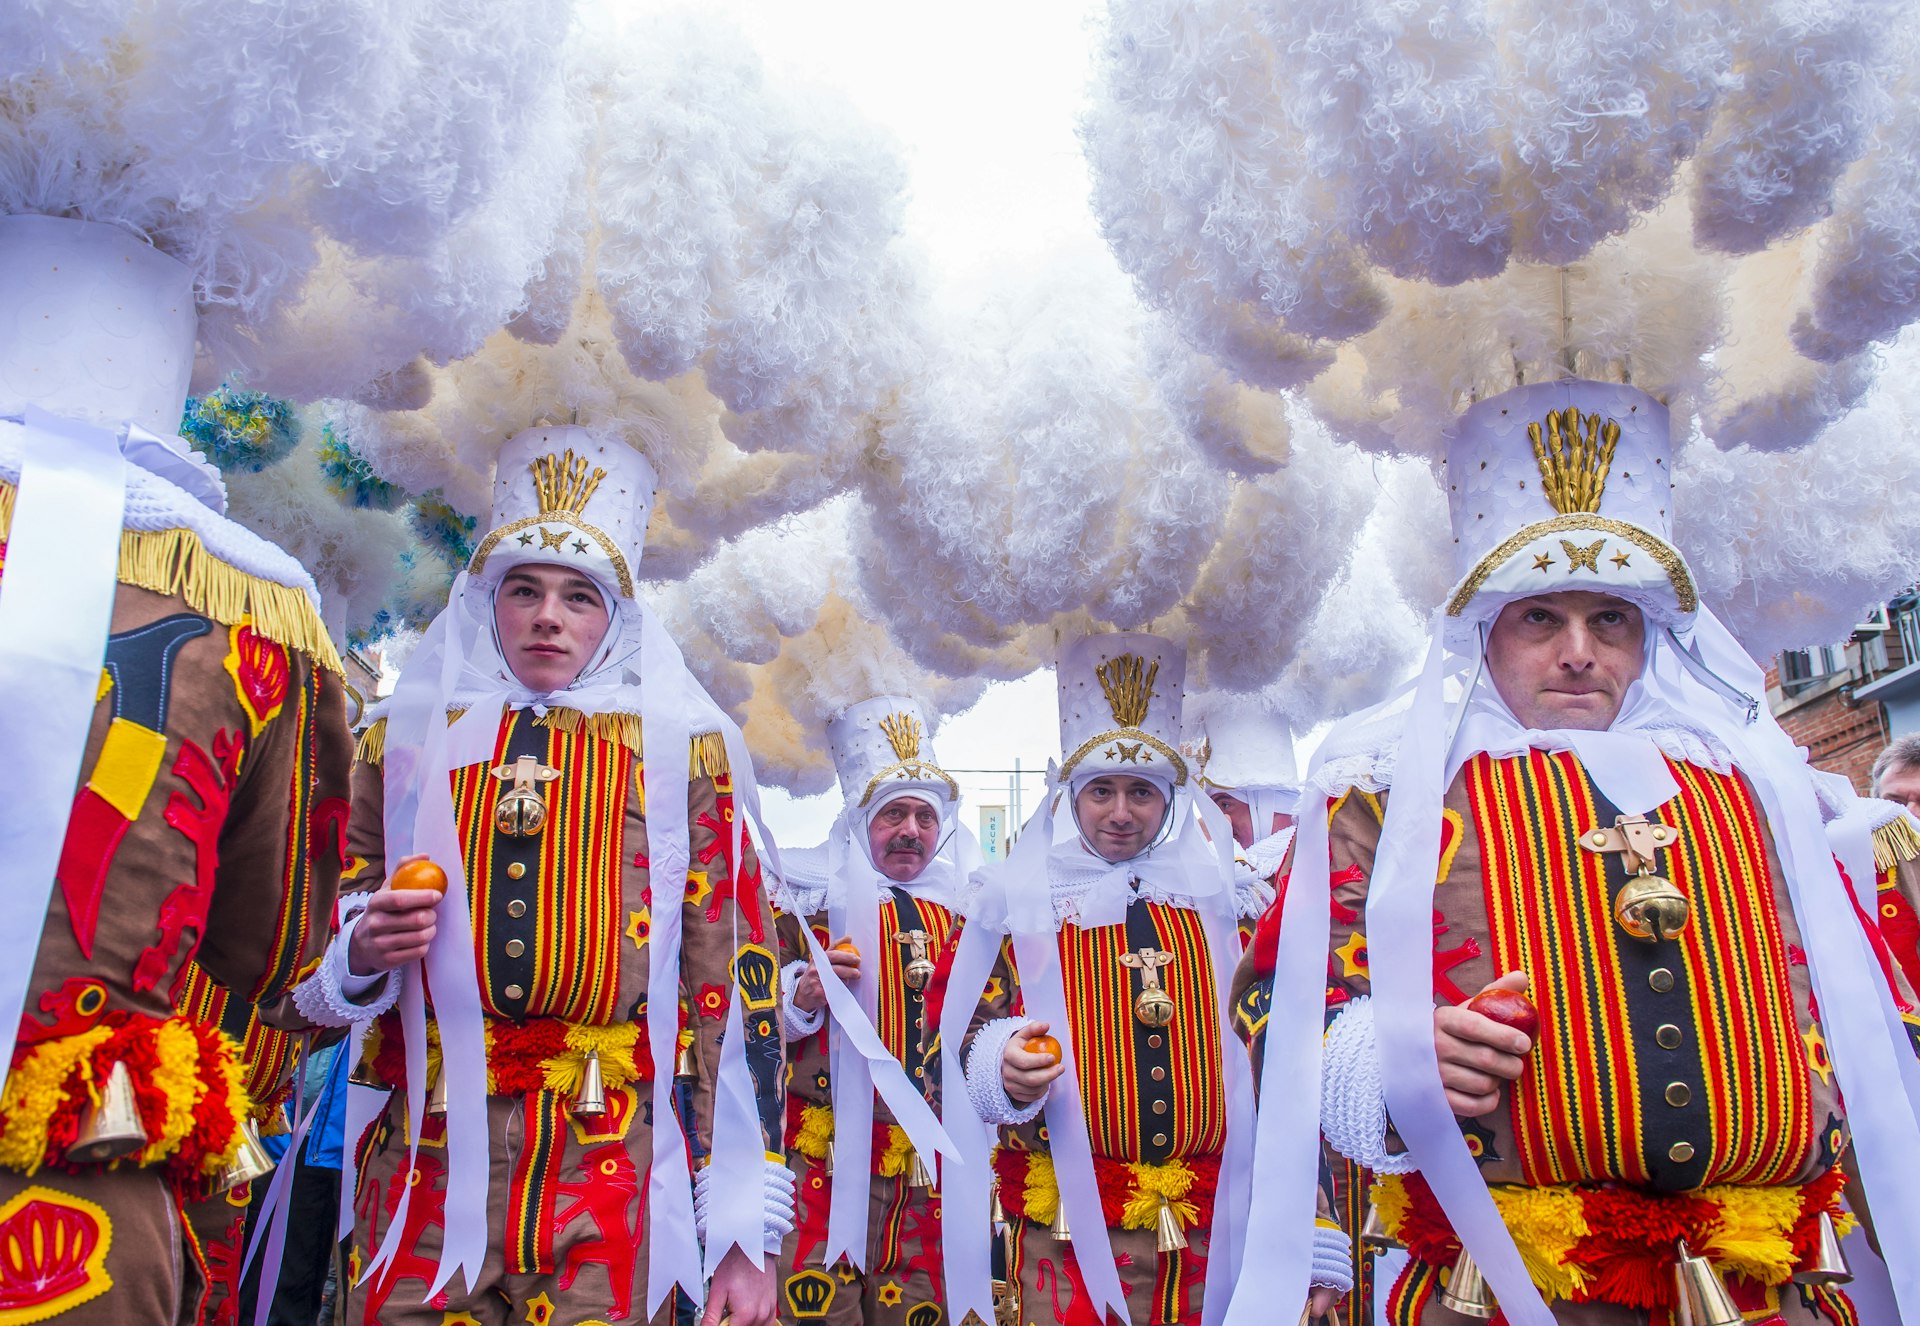 Pessoas com fantasias elaboradas que cobrem seus corpos e cabeças ficam em um ambiente enfumaçado como parte de um desfile de carnaval